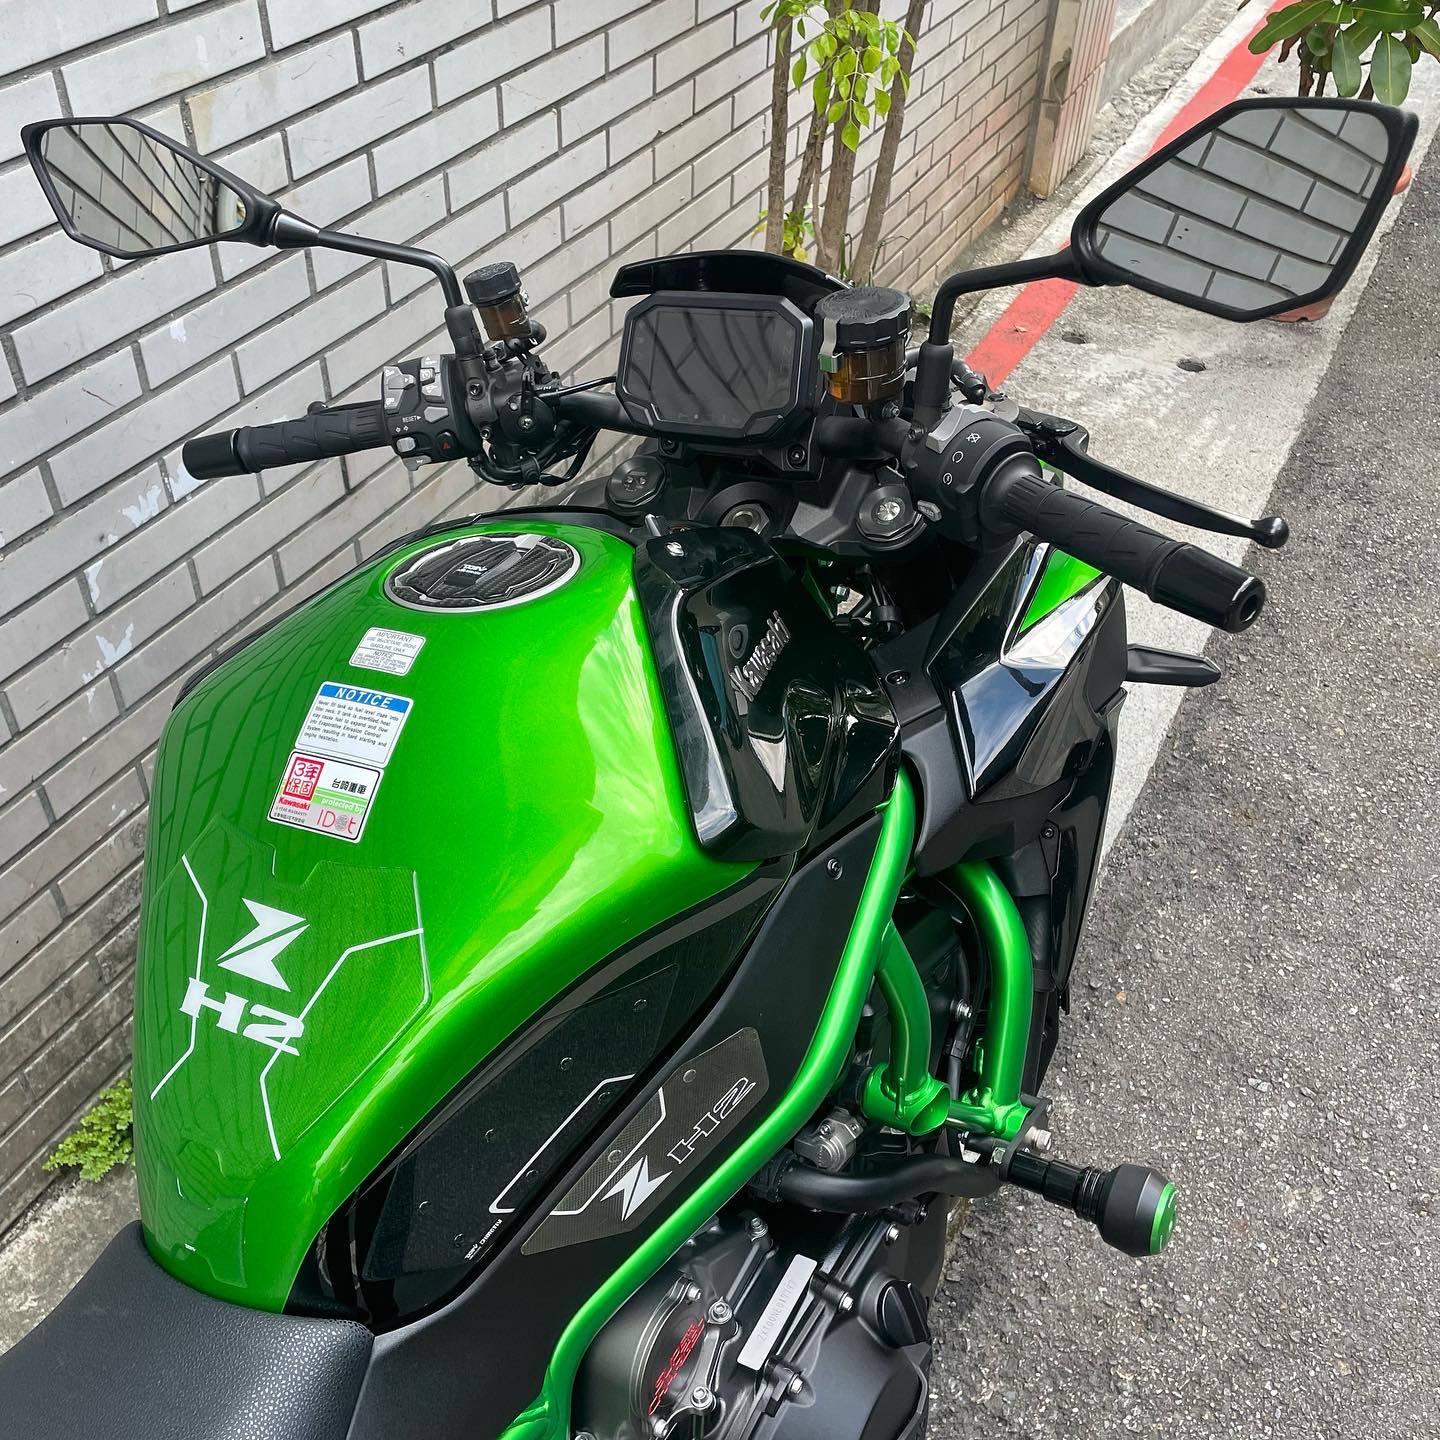 KAWASAKI Z H2 - 中古/二手車出售中 川崎 Kawasaki ZH2 ABS 總代理 | Ze重機車庫/億大重機